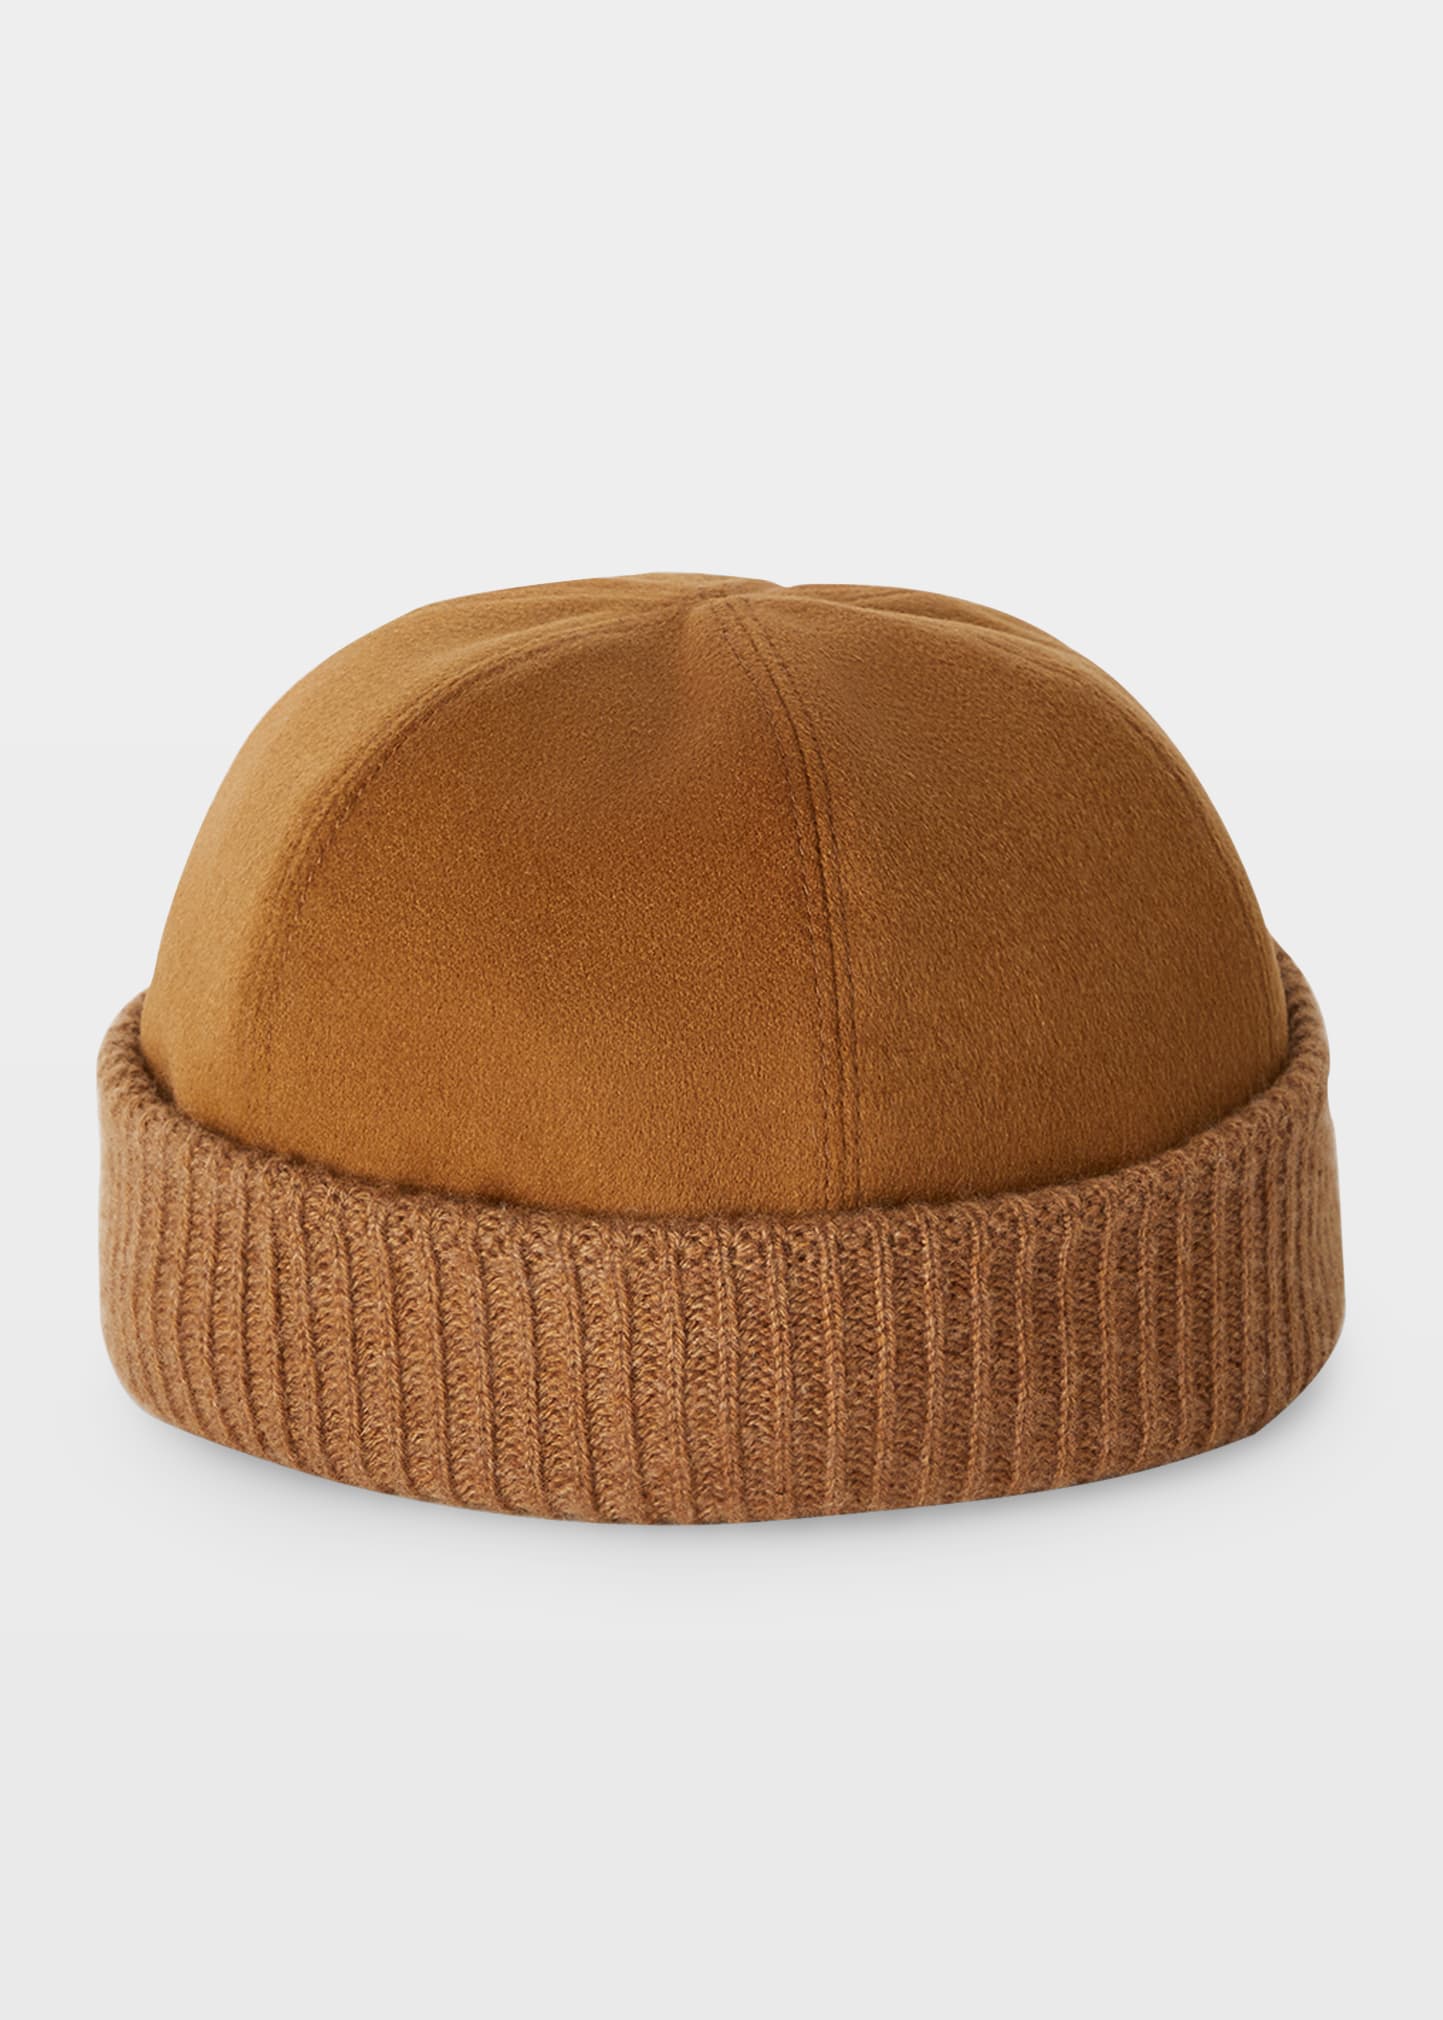 Men's Cashmere Beanie Hat